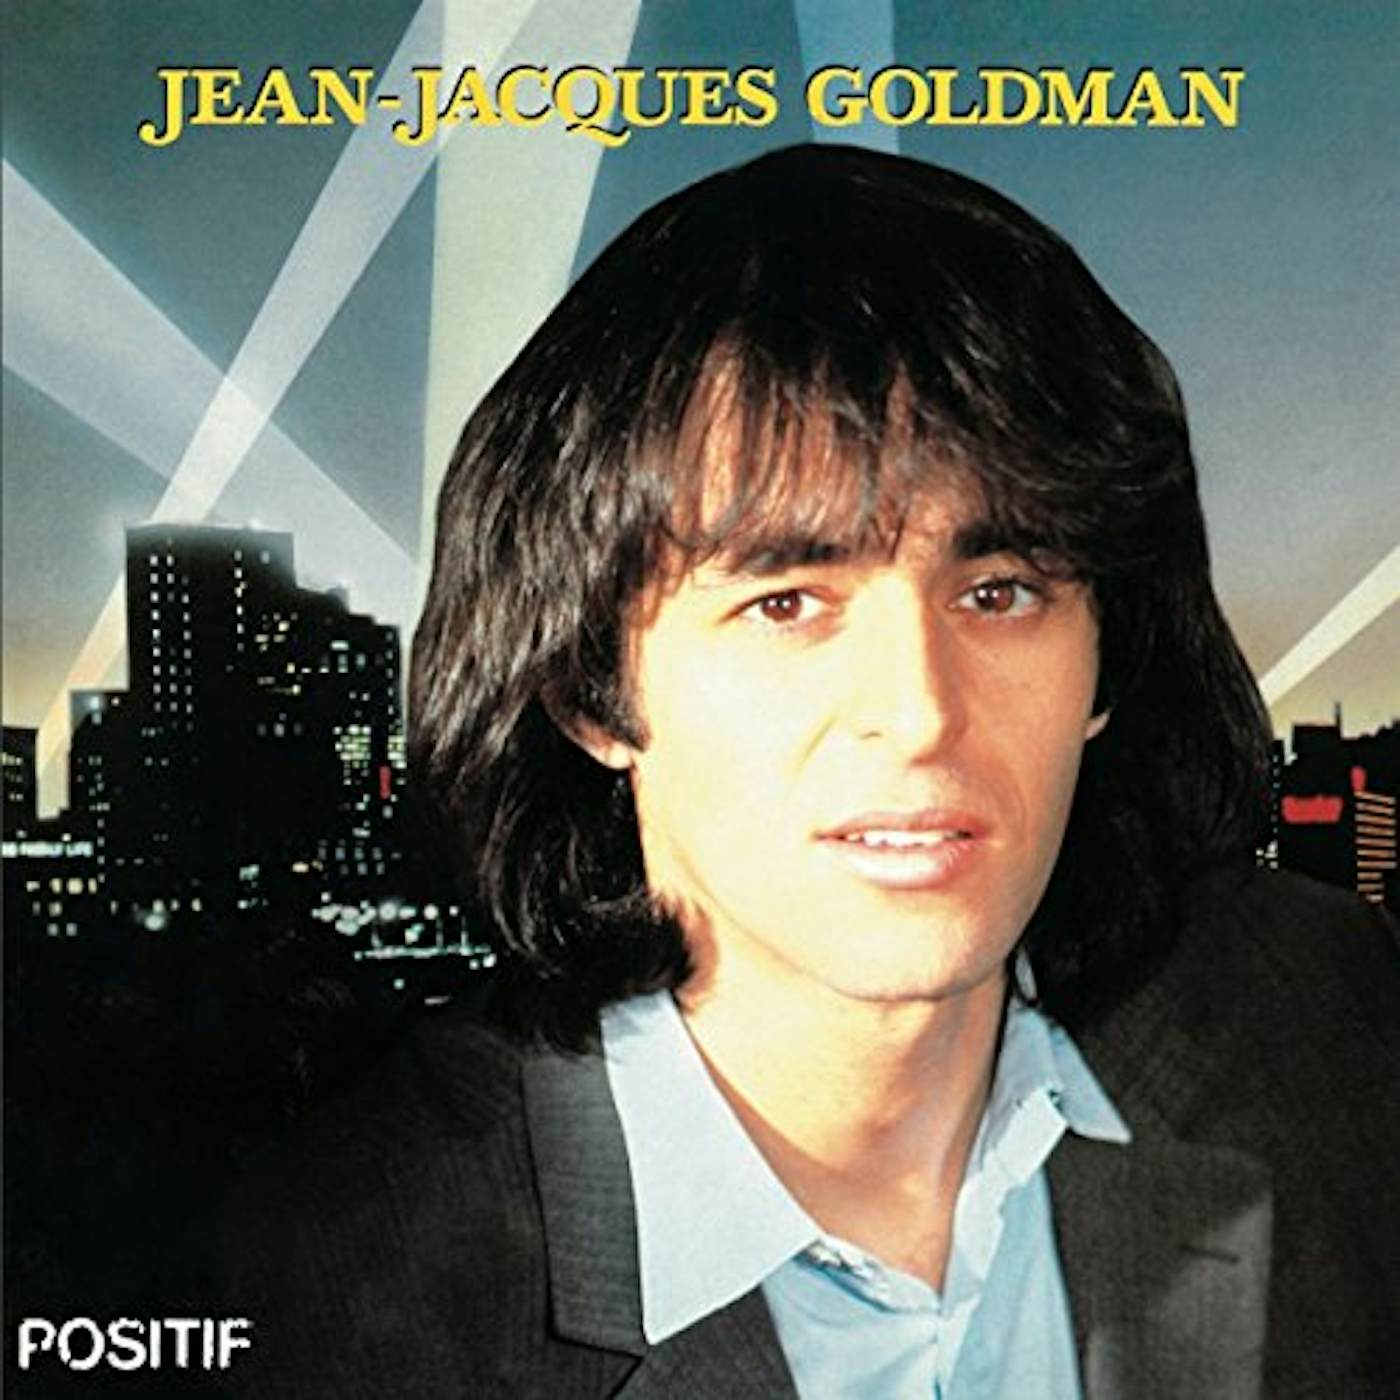 Jean-Jacques Goldman Positif Vinyl Record